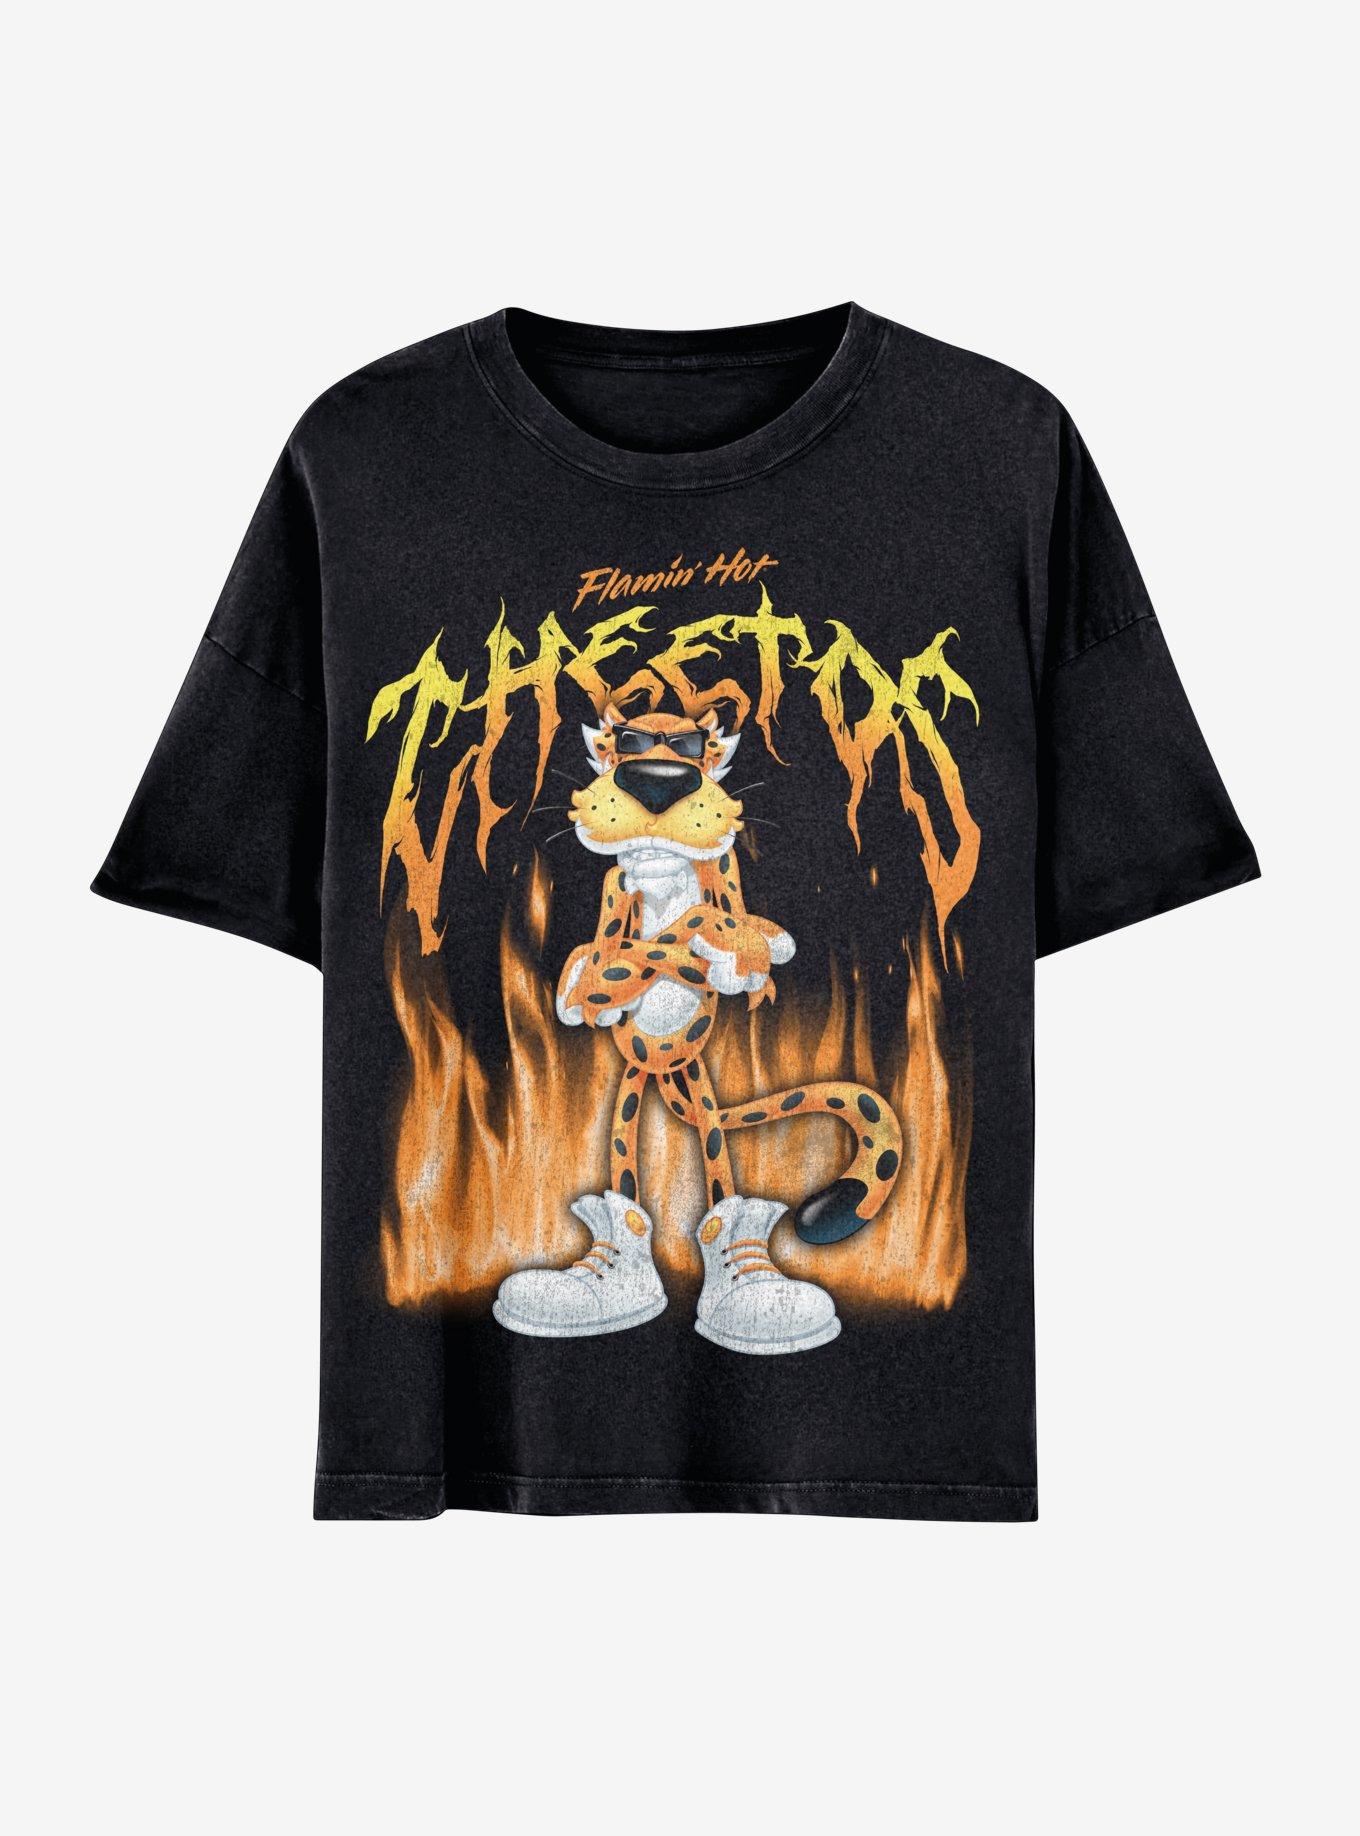 Flamin' Hot Cheetos Metal Boyfriend Fit Girls T-Shirt